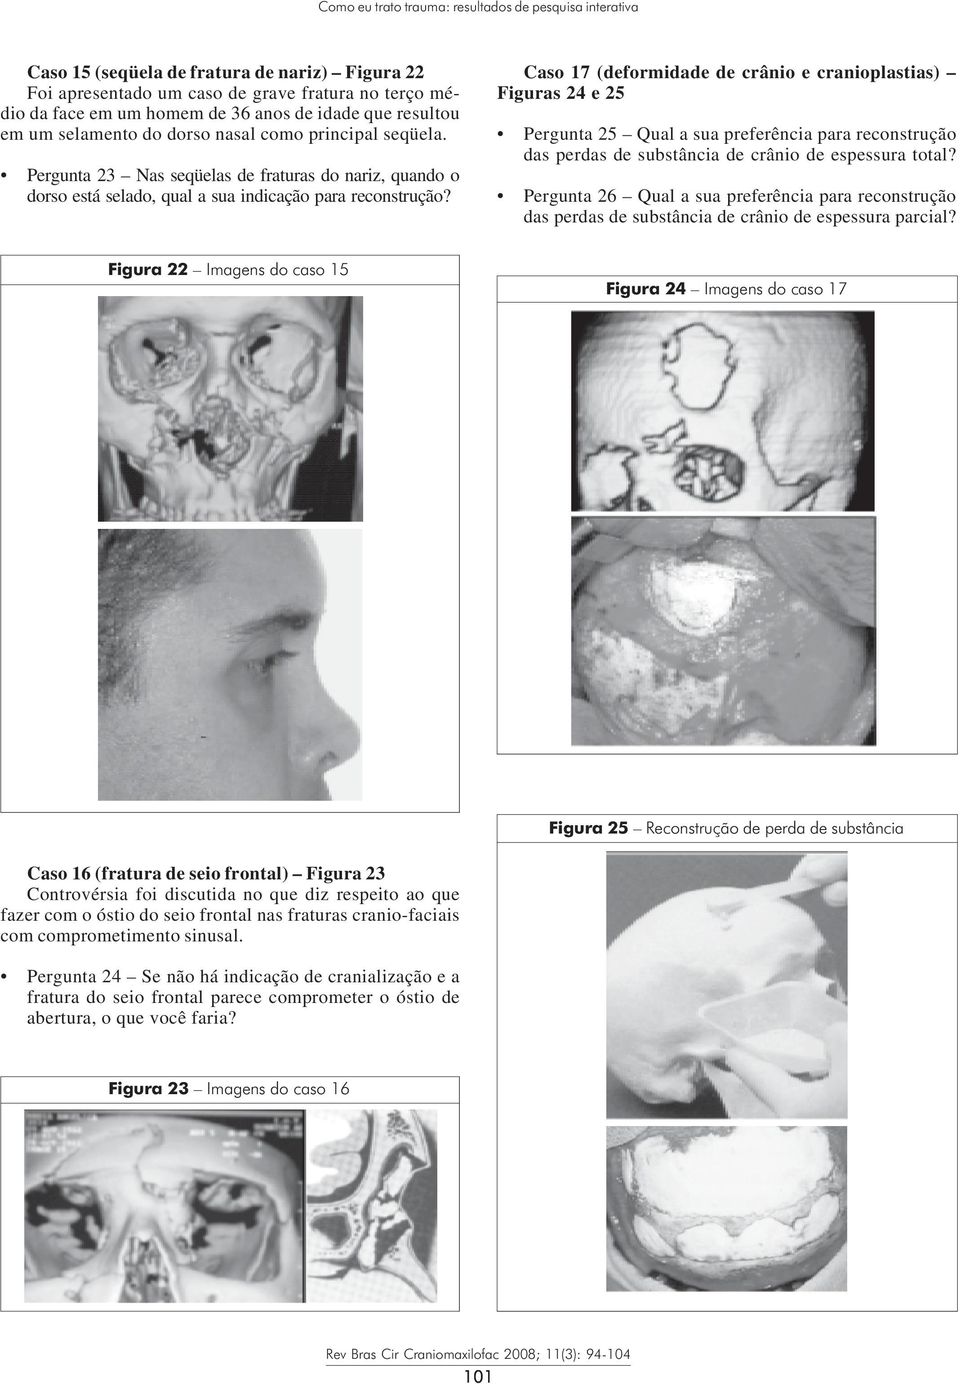 Caso 17 (deformidade de crânio e cranioplastias) Figuras 24 e 25 Pergunta 25 Qual a sua preferência para reconstrução das perdas de substância de crânio de espessura total?